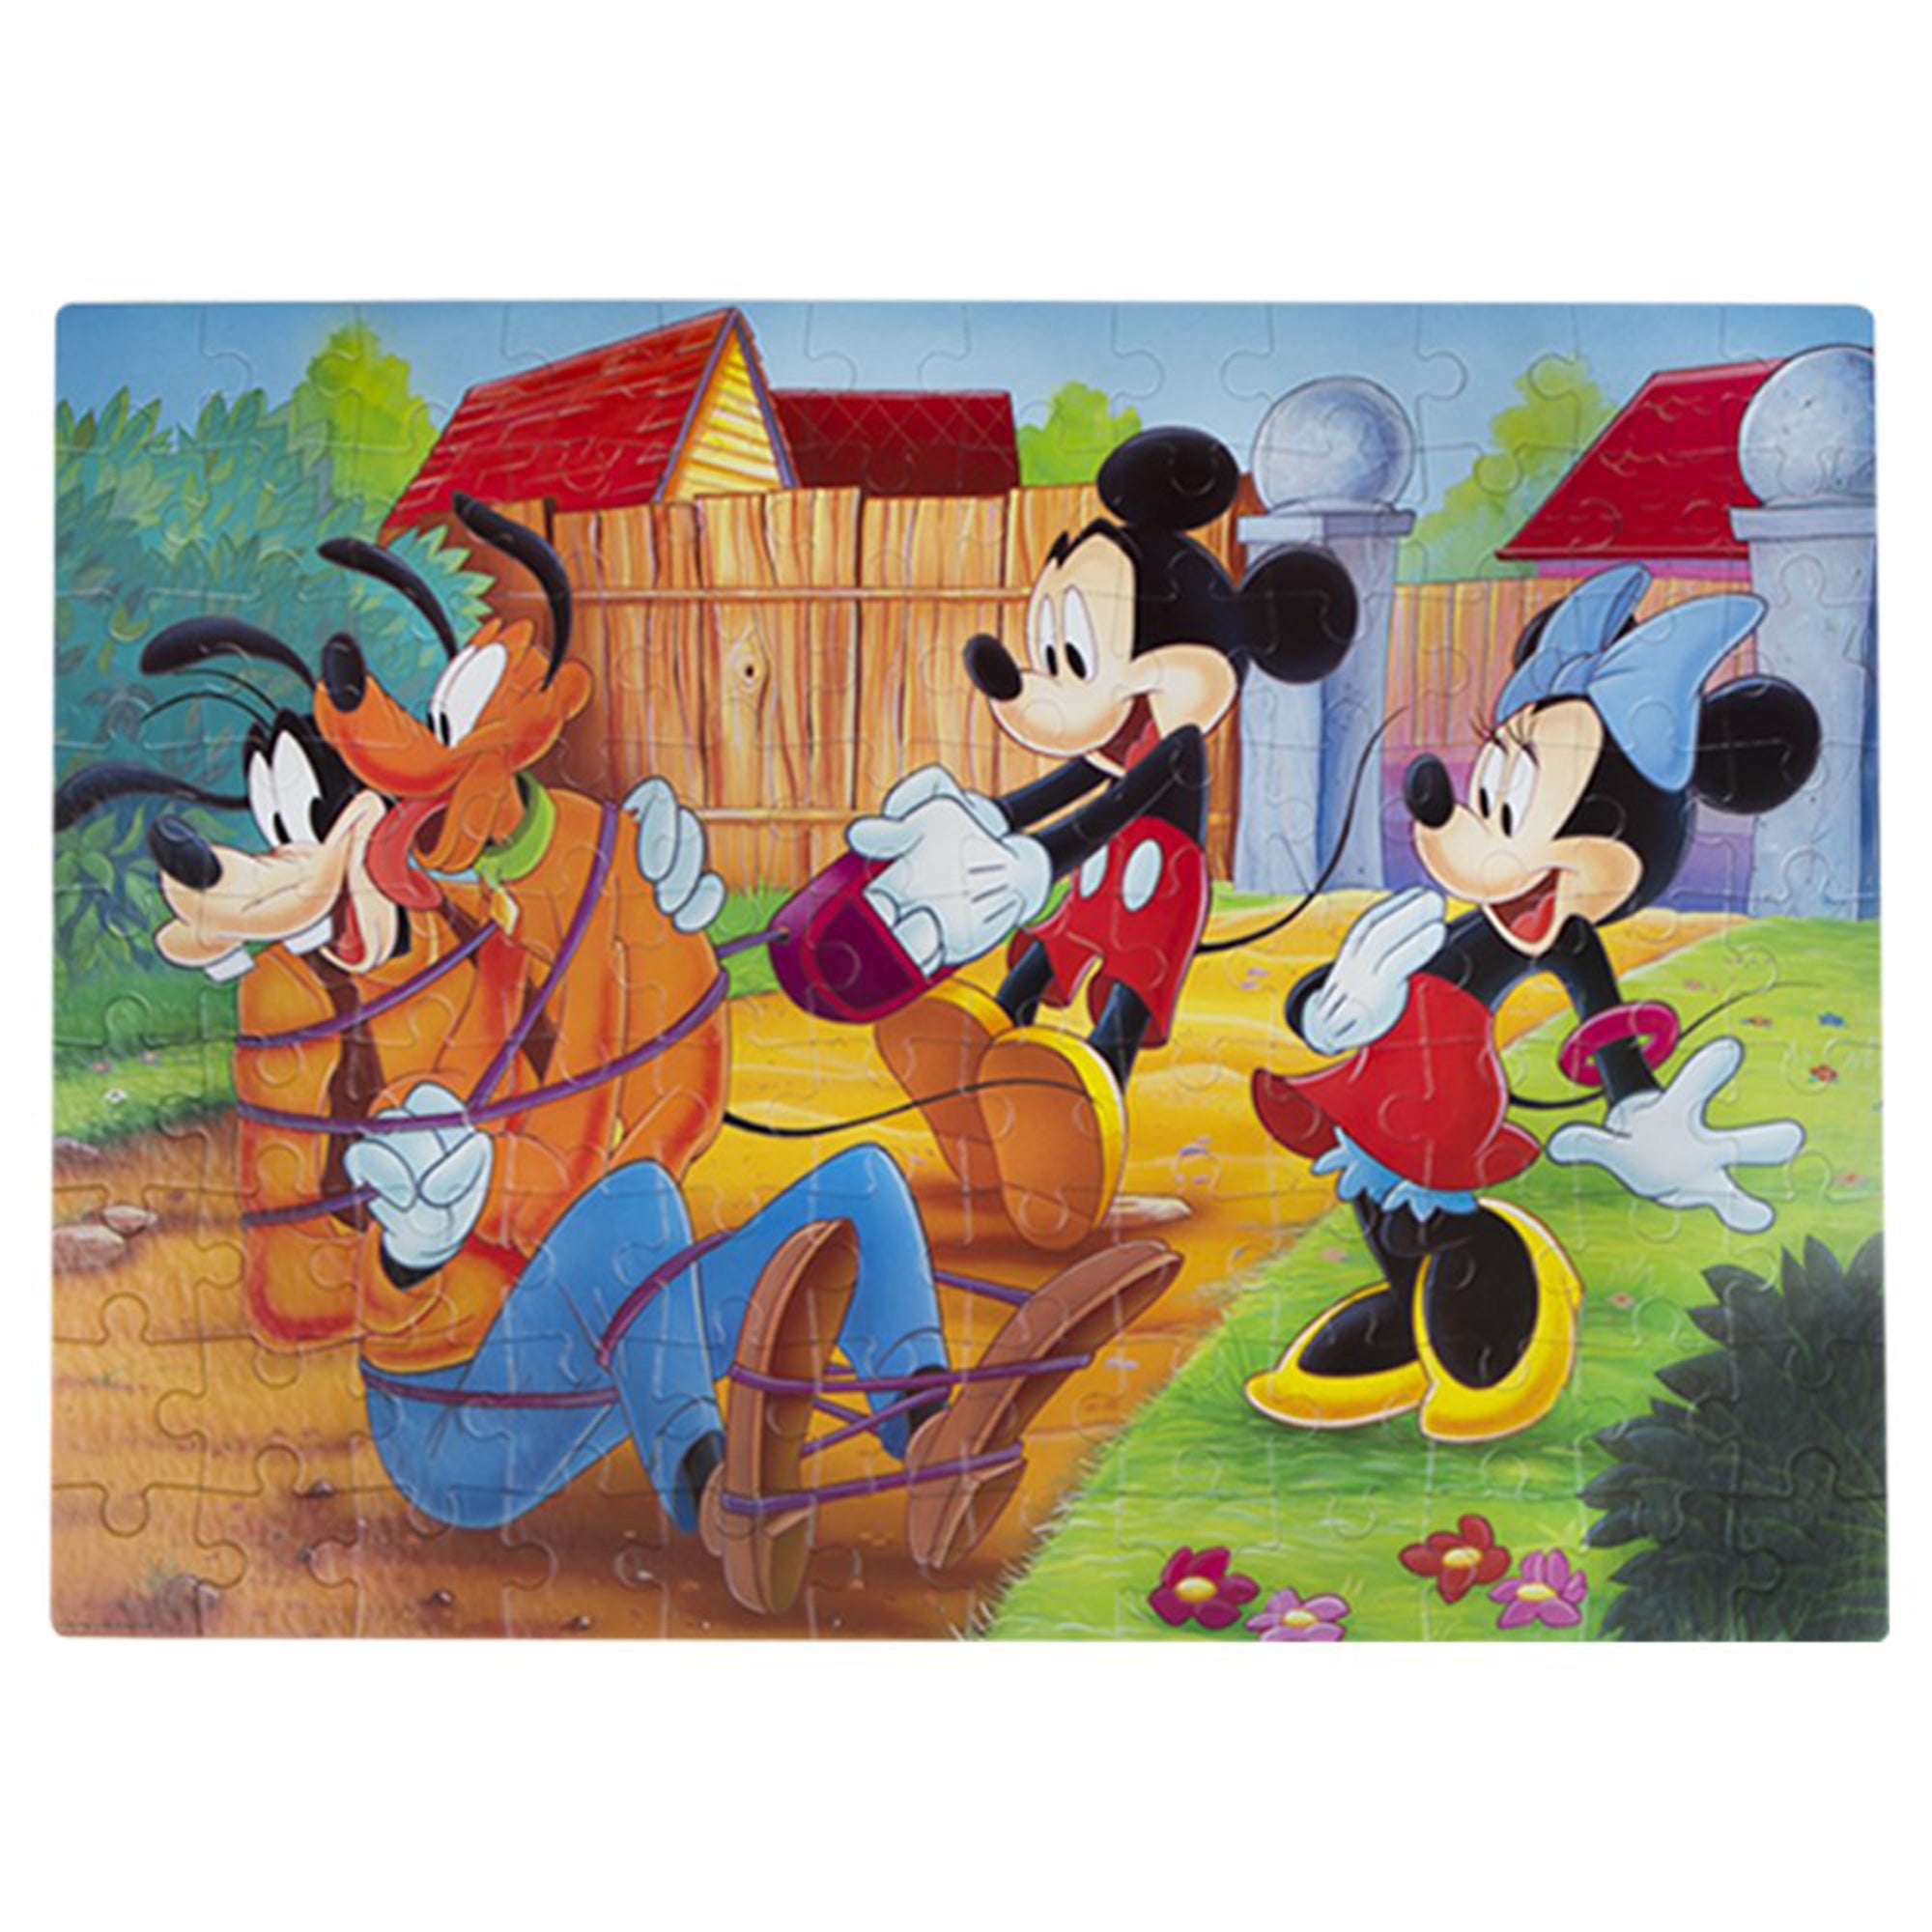 Puzzle maxi double-face Disney Topolino e Minnie 108 pz retro colorabile 1449